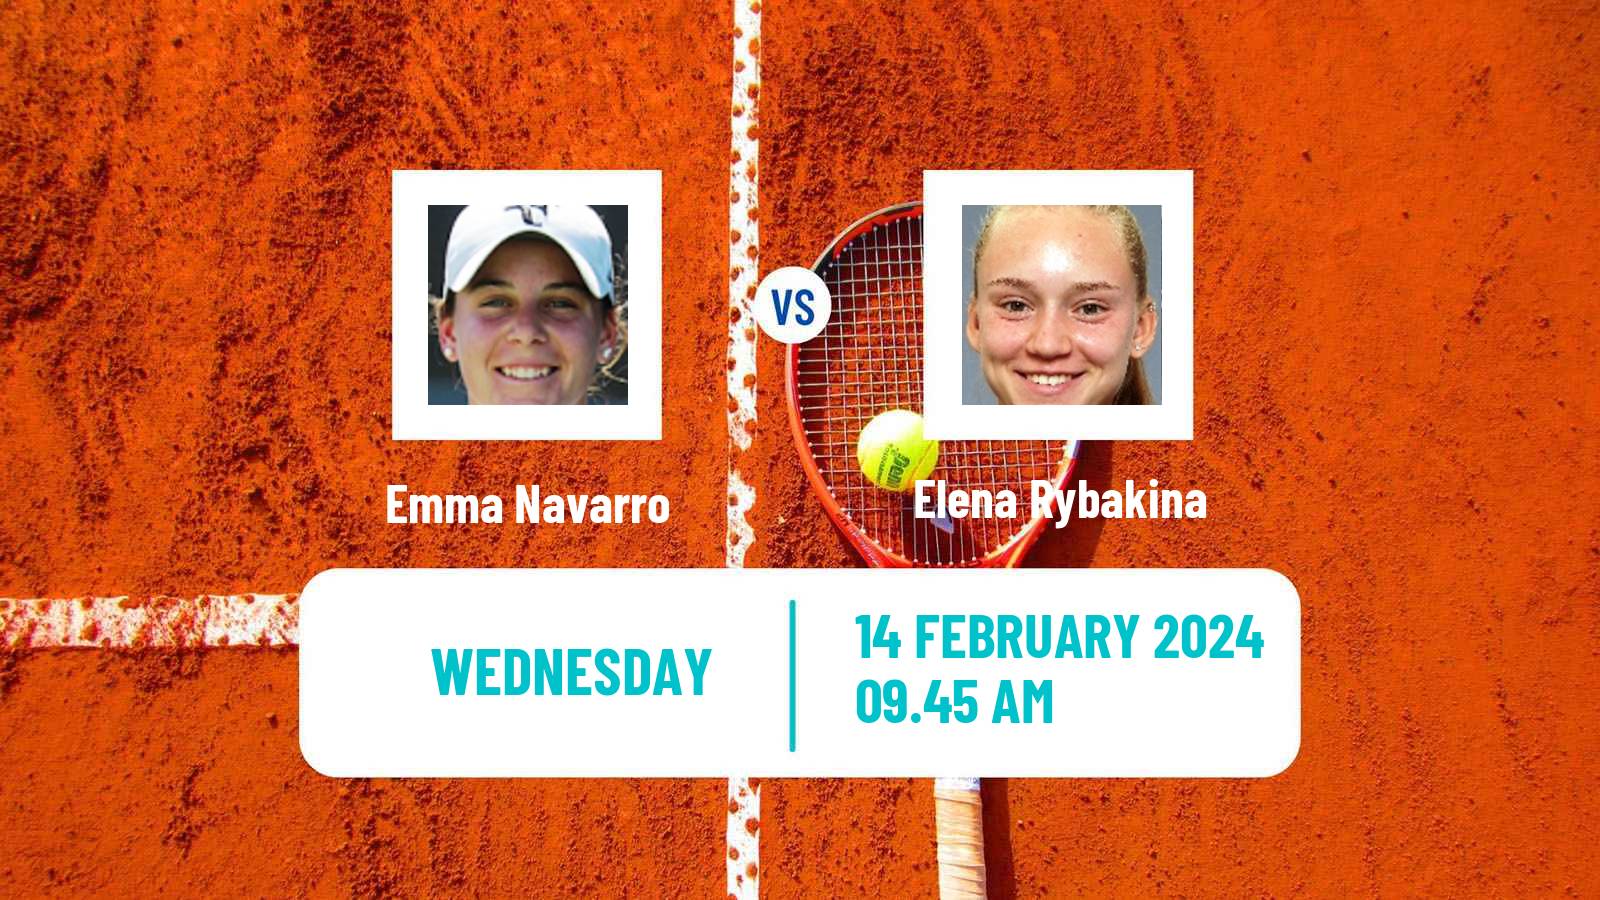 Tennis WTA Doha Emma Navarro - Elena Rybakina